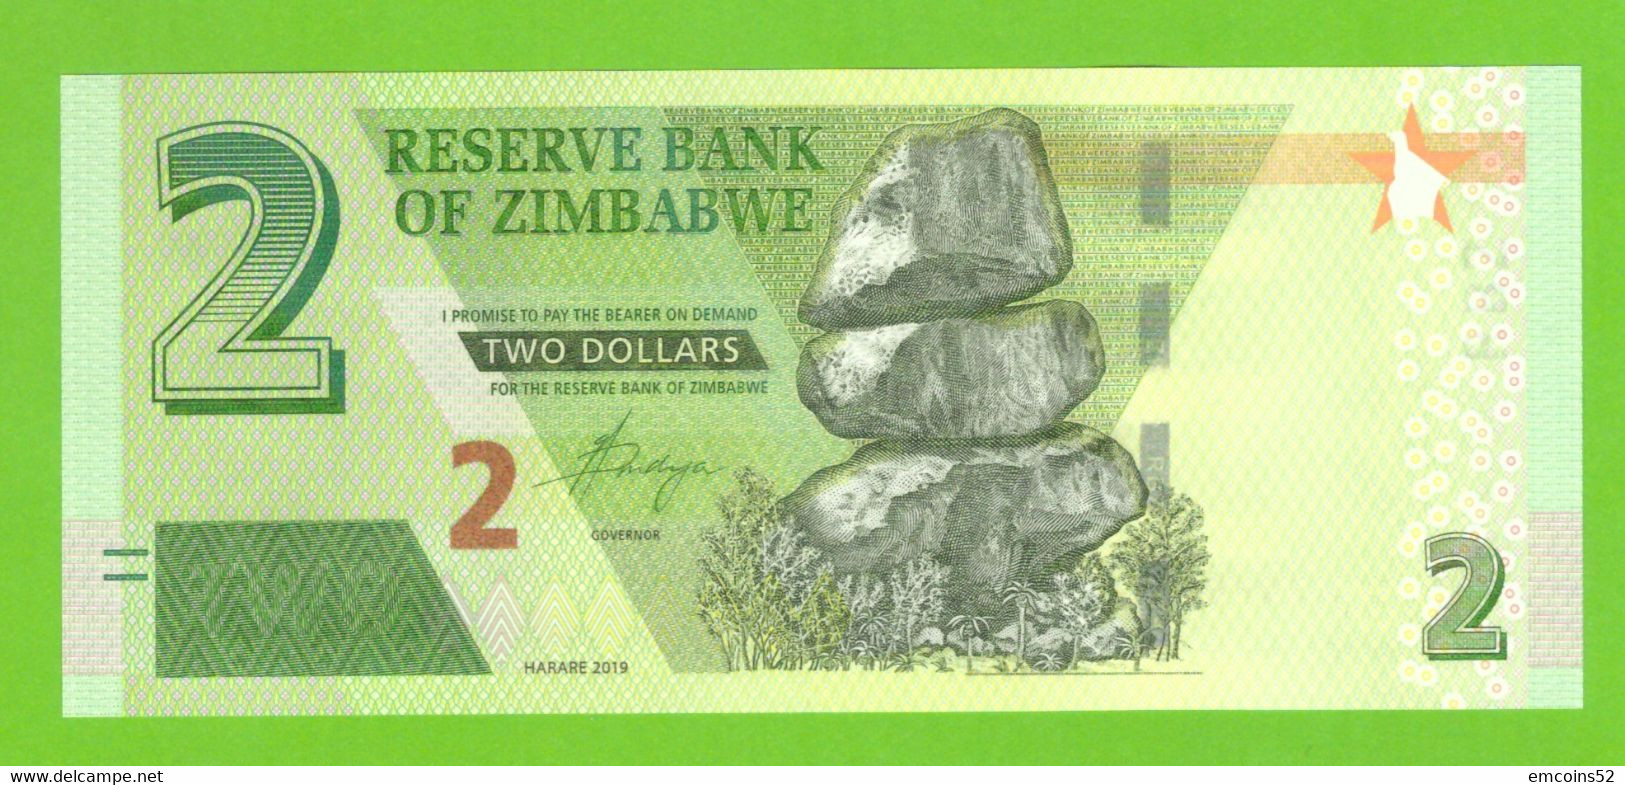 ZIMBABWE 2 DOLLARS 2019  P-W101 UNC - Simbabwe